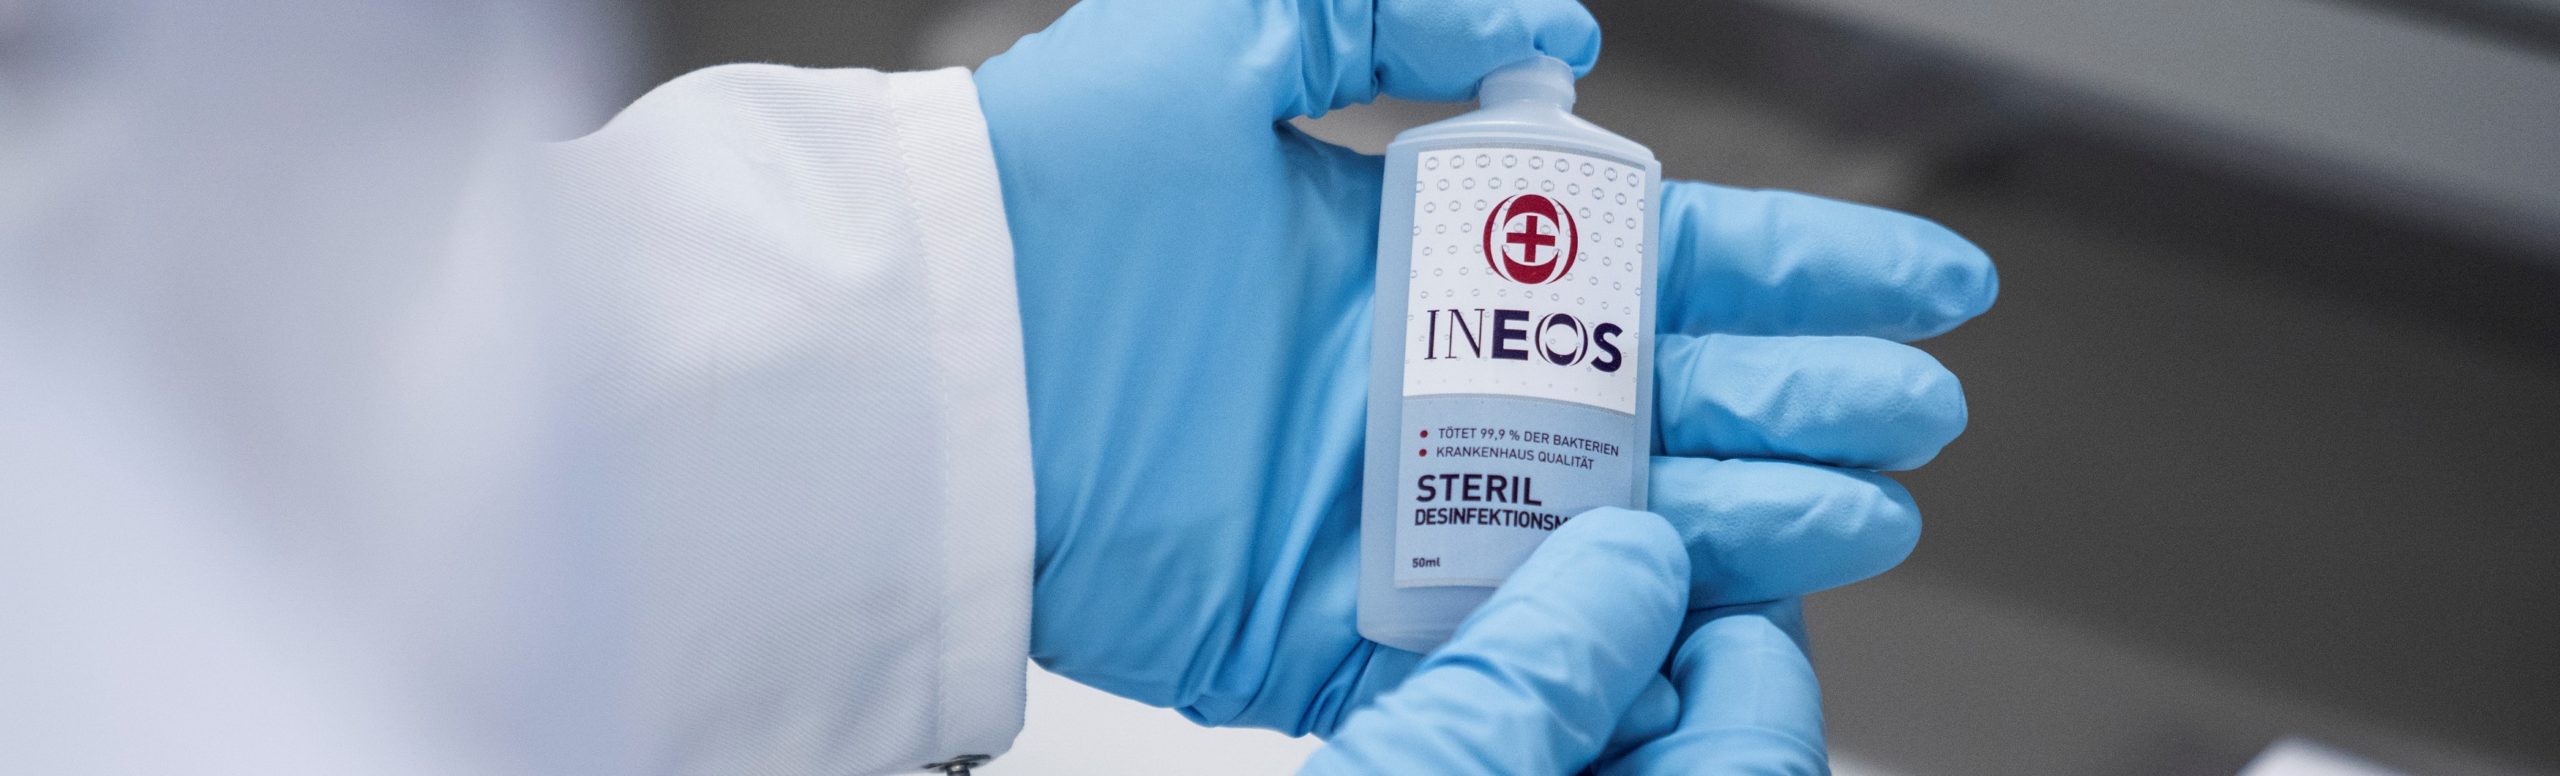 INEOS liefert Handdesinfektionsmittel an Krankenhäuser